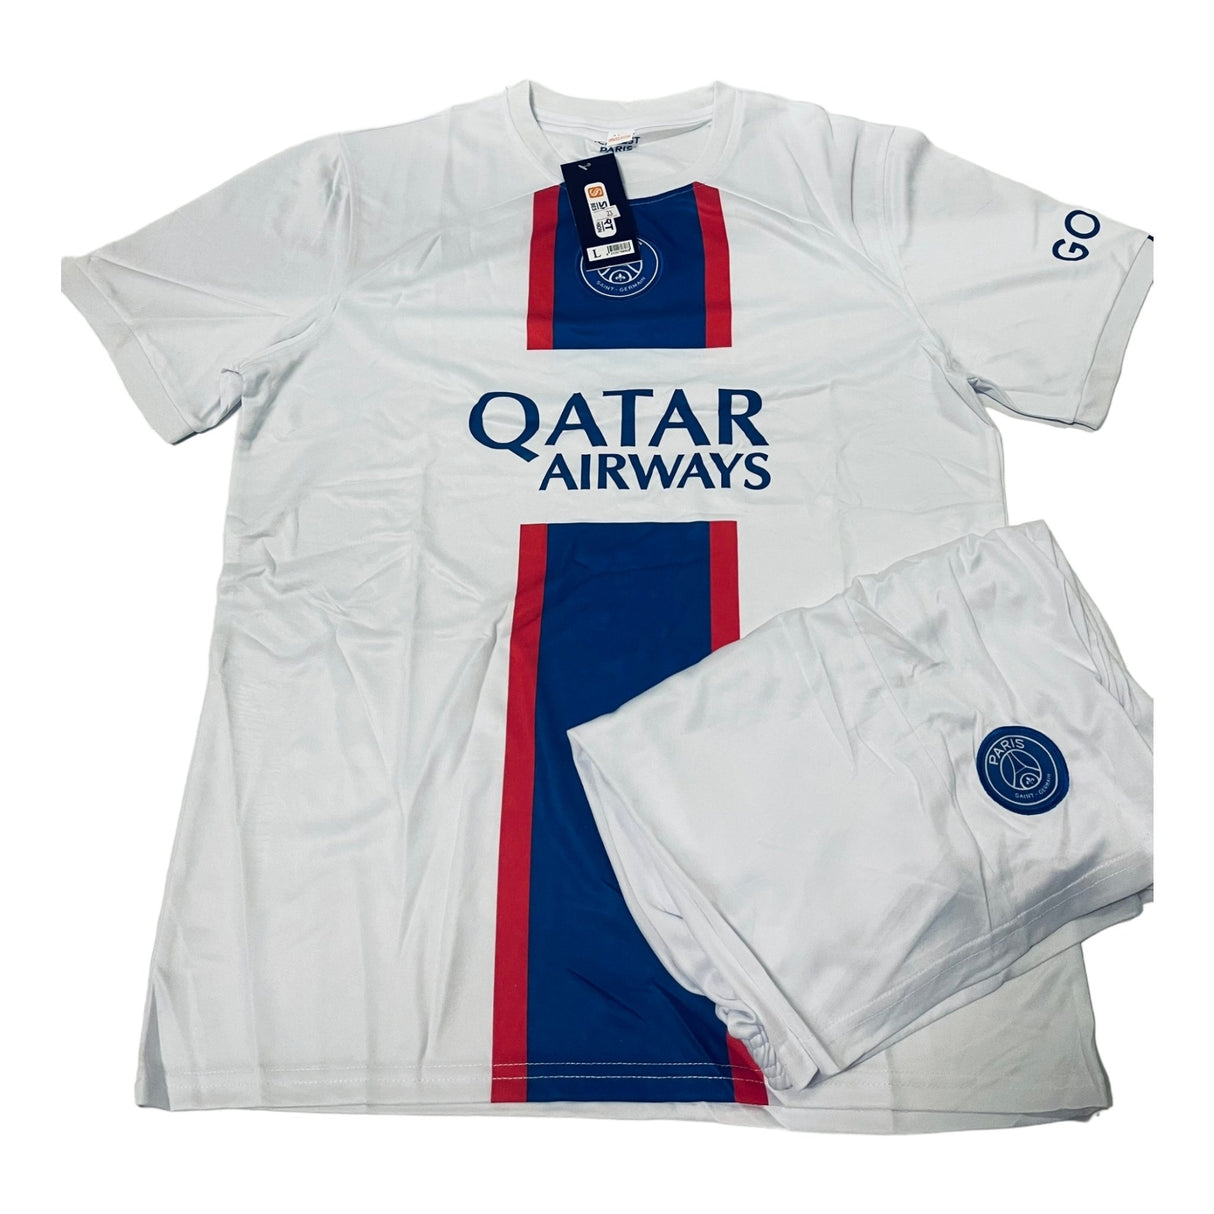 PSG PARIS QATAR Men's Sports Jersey T-Shirts & Shorts WHITE-00119 - BELLEZA'S - PSG PARIS QATAR Men's Sports Jersey T-Shirts & Shorts WHITE-00119 - JERSEY - 00119